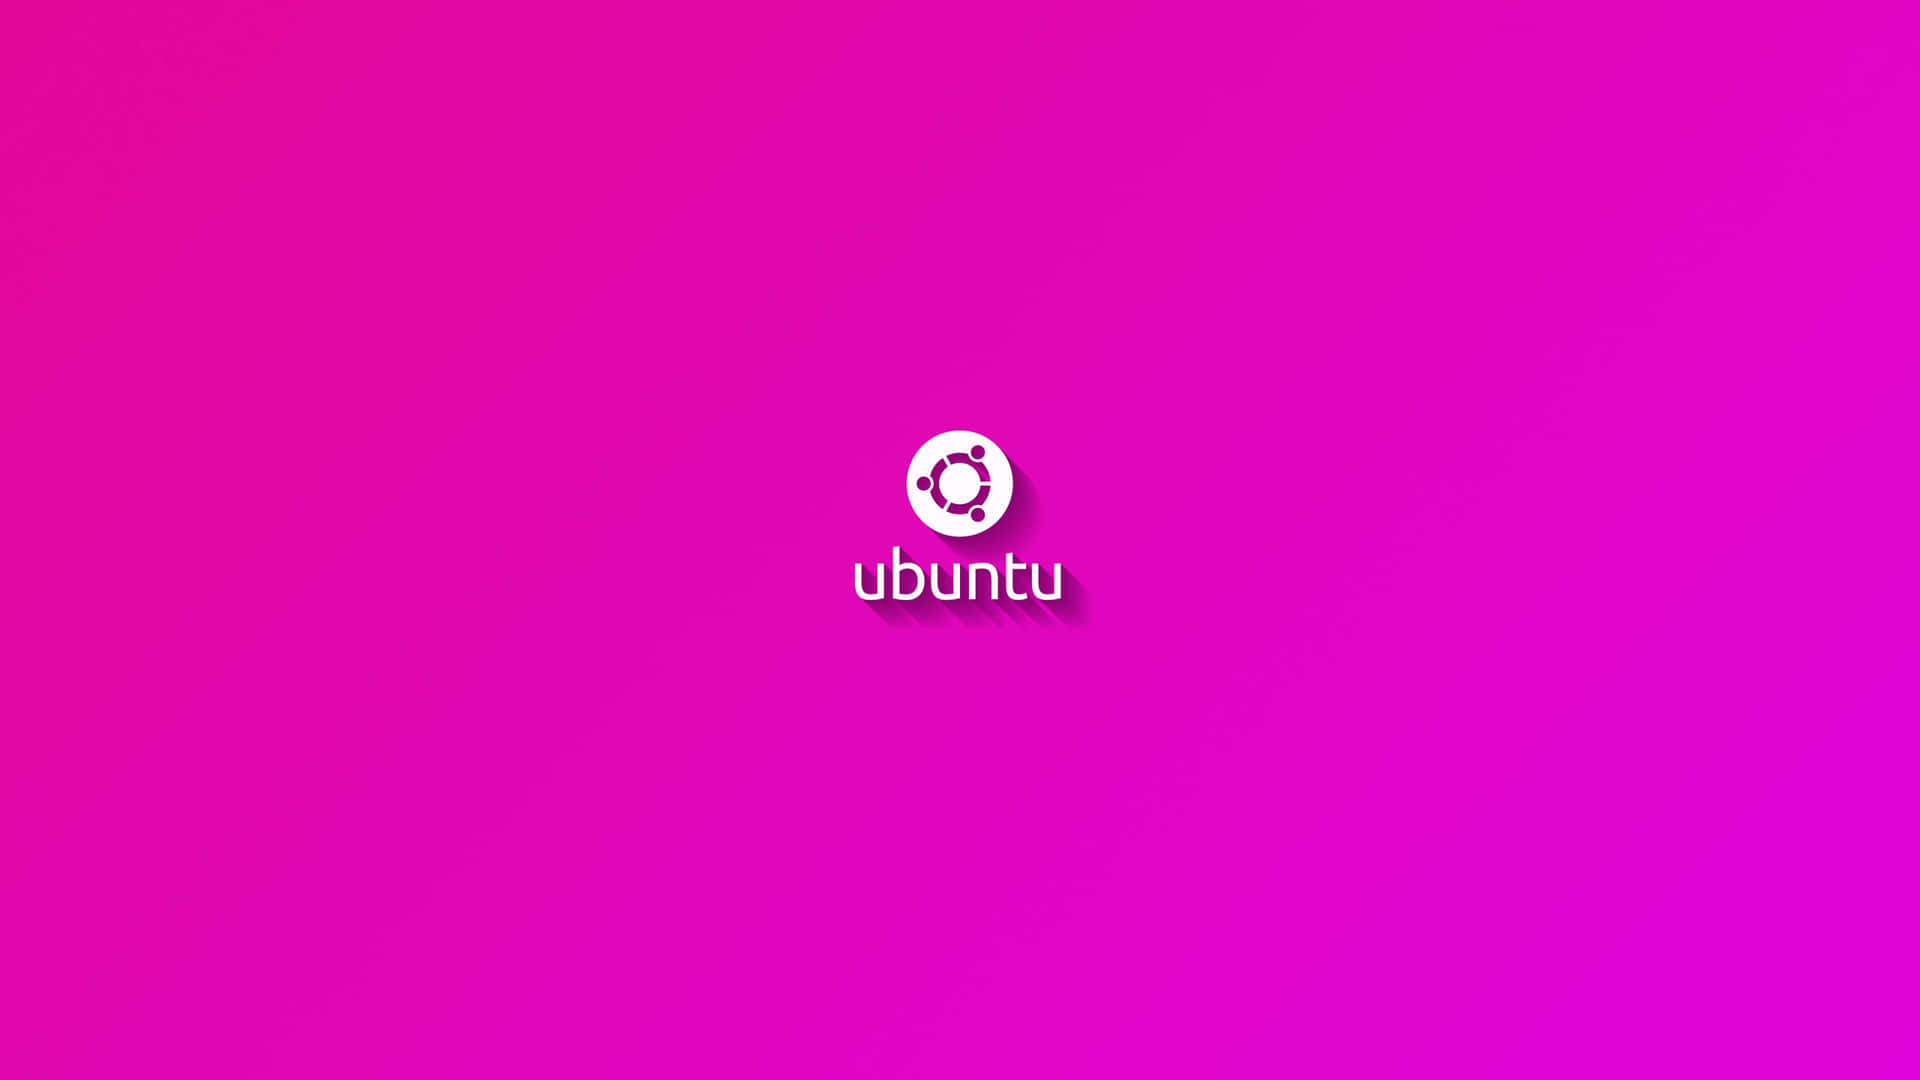 Enrosa Bakgrund Med Ordet Ubuntu På Den Wallpaper